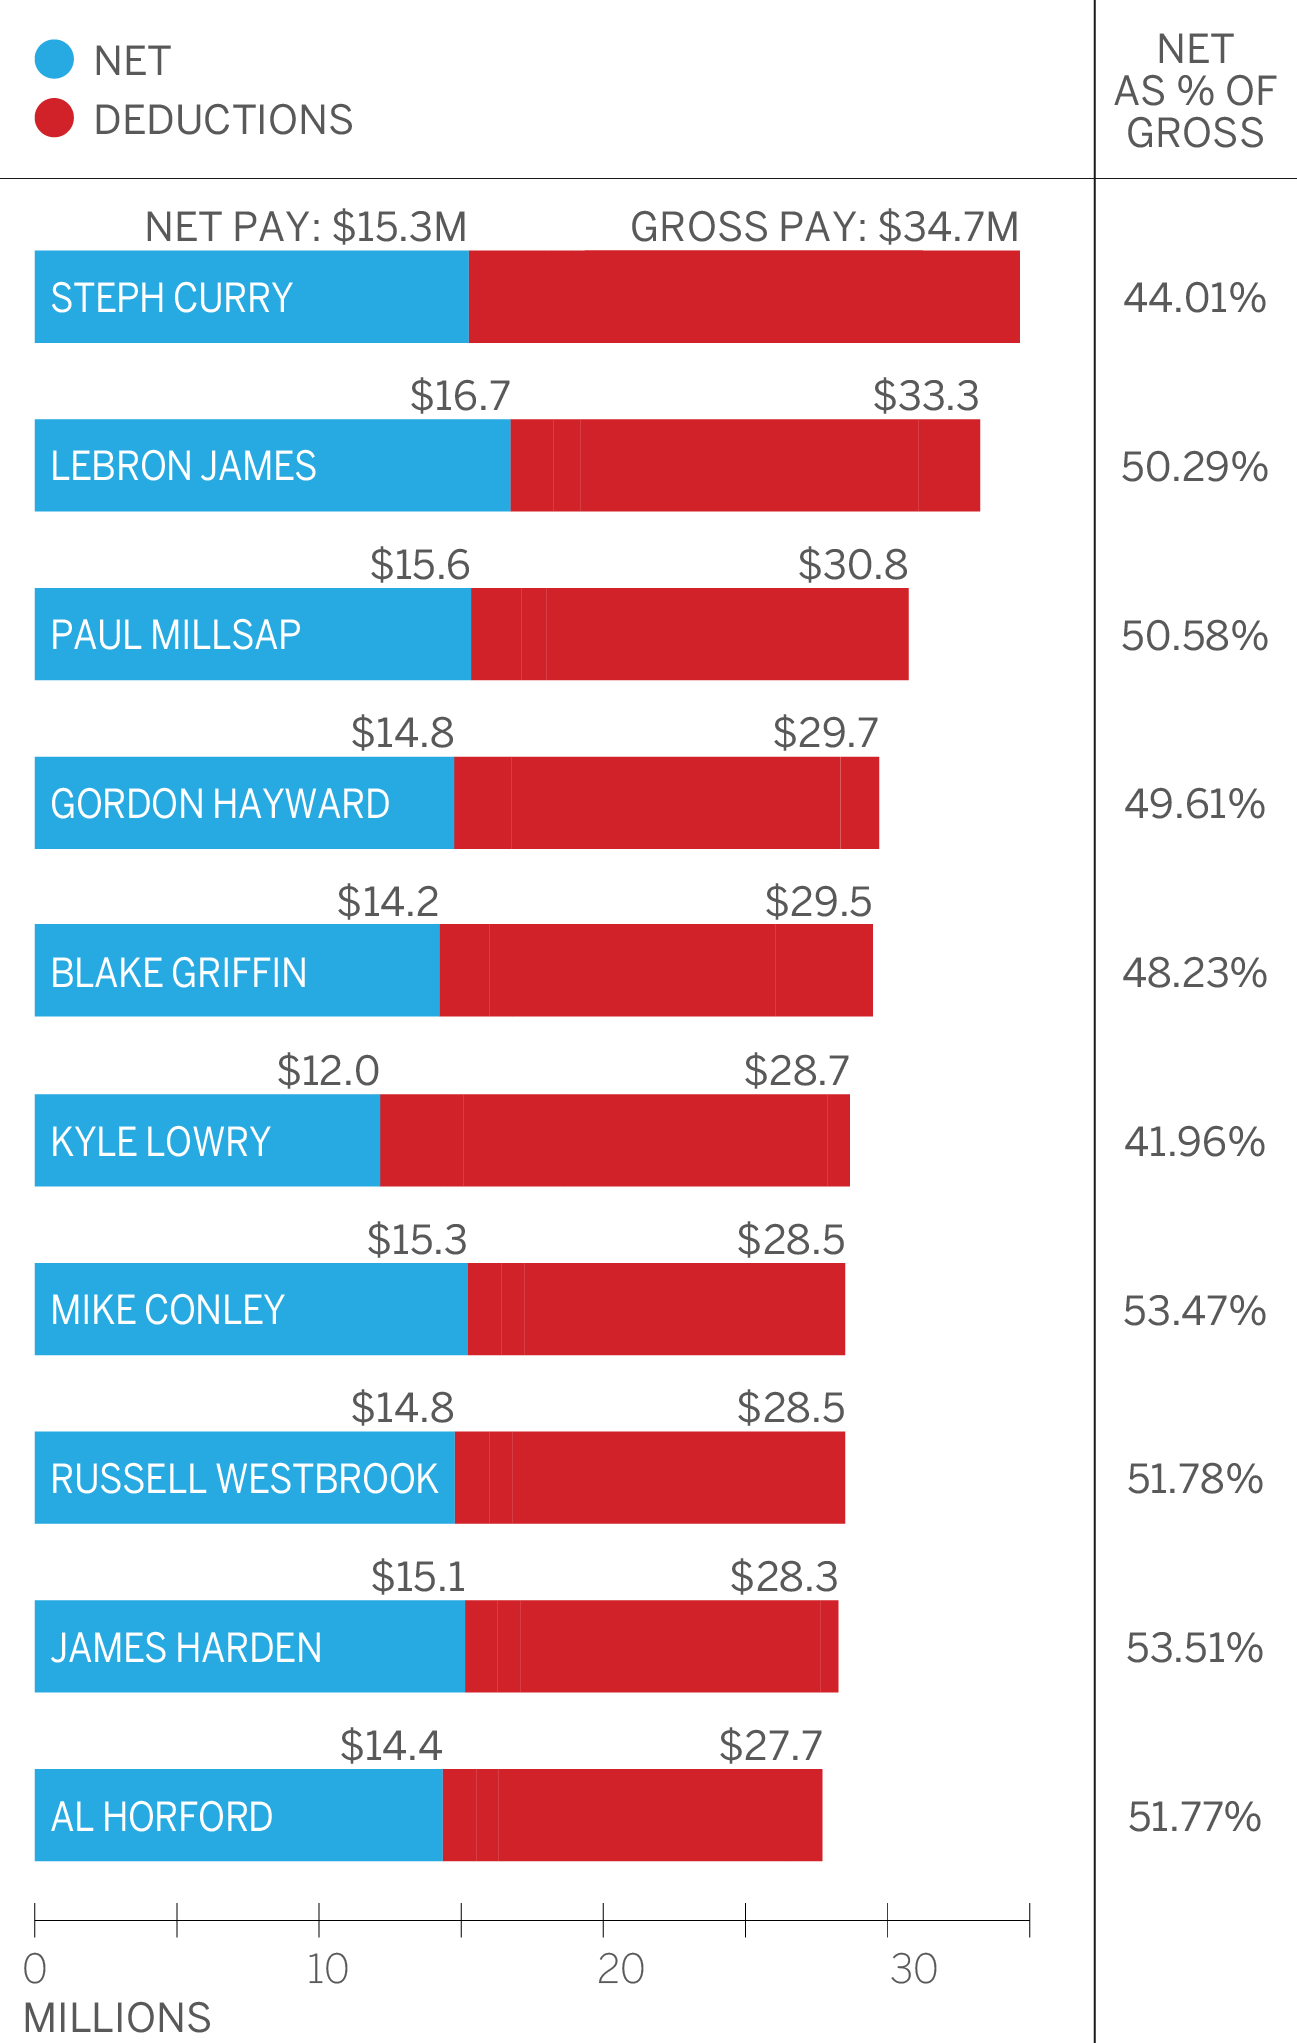 ¿Cuánto ganan realmente los mejor pagados NBA?